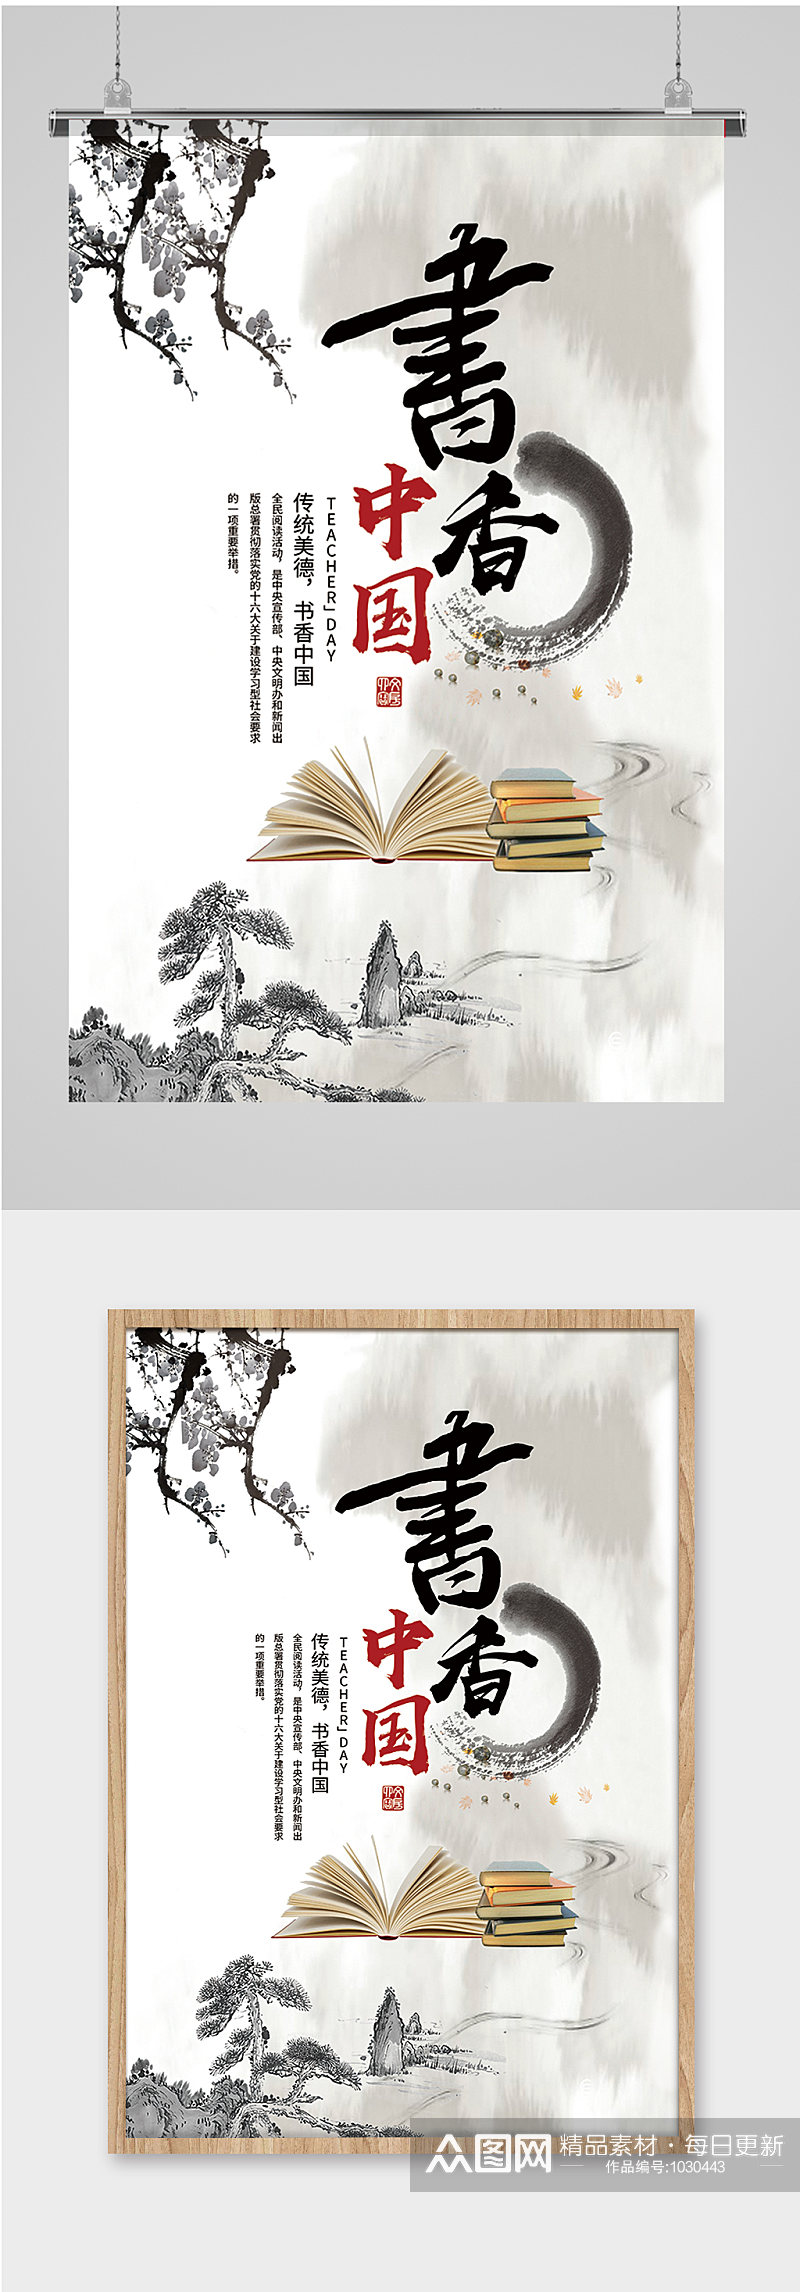 书香中国传统文化海报素材